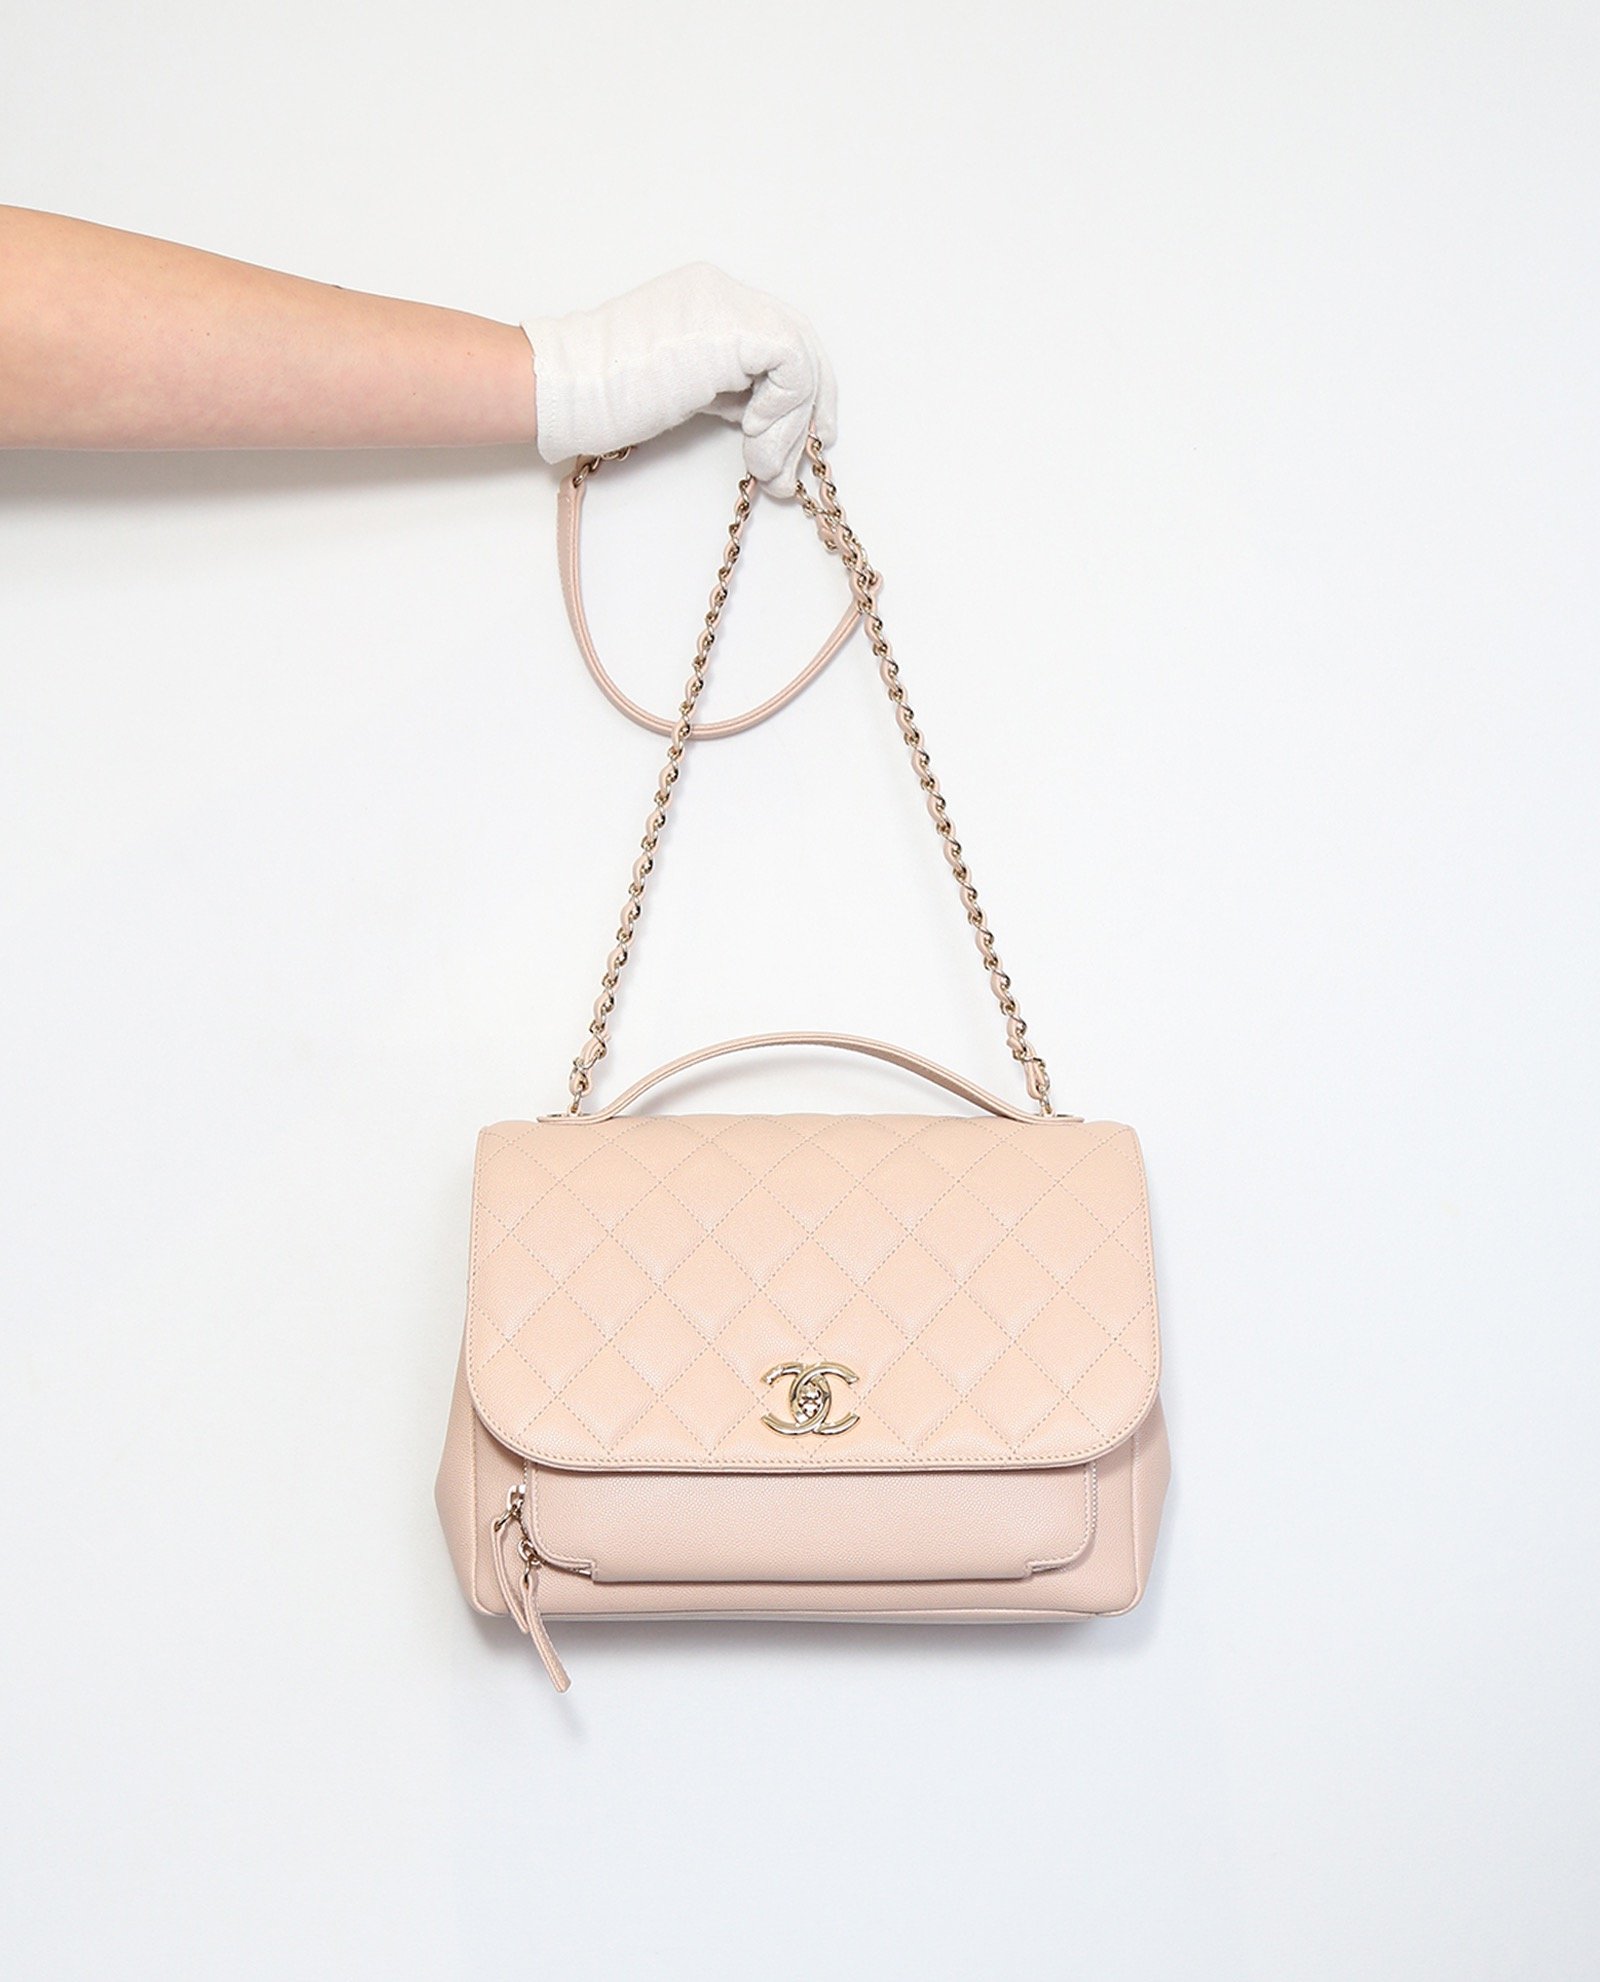 Business Affinity Flap Bag, Chanel - Designer Exchange